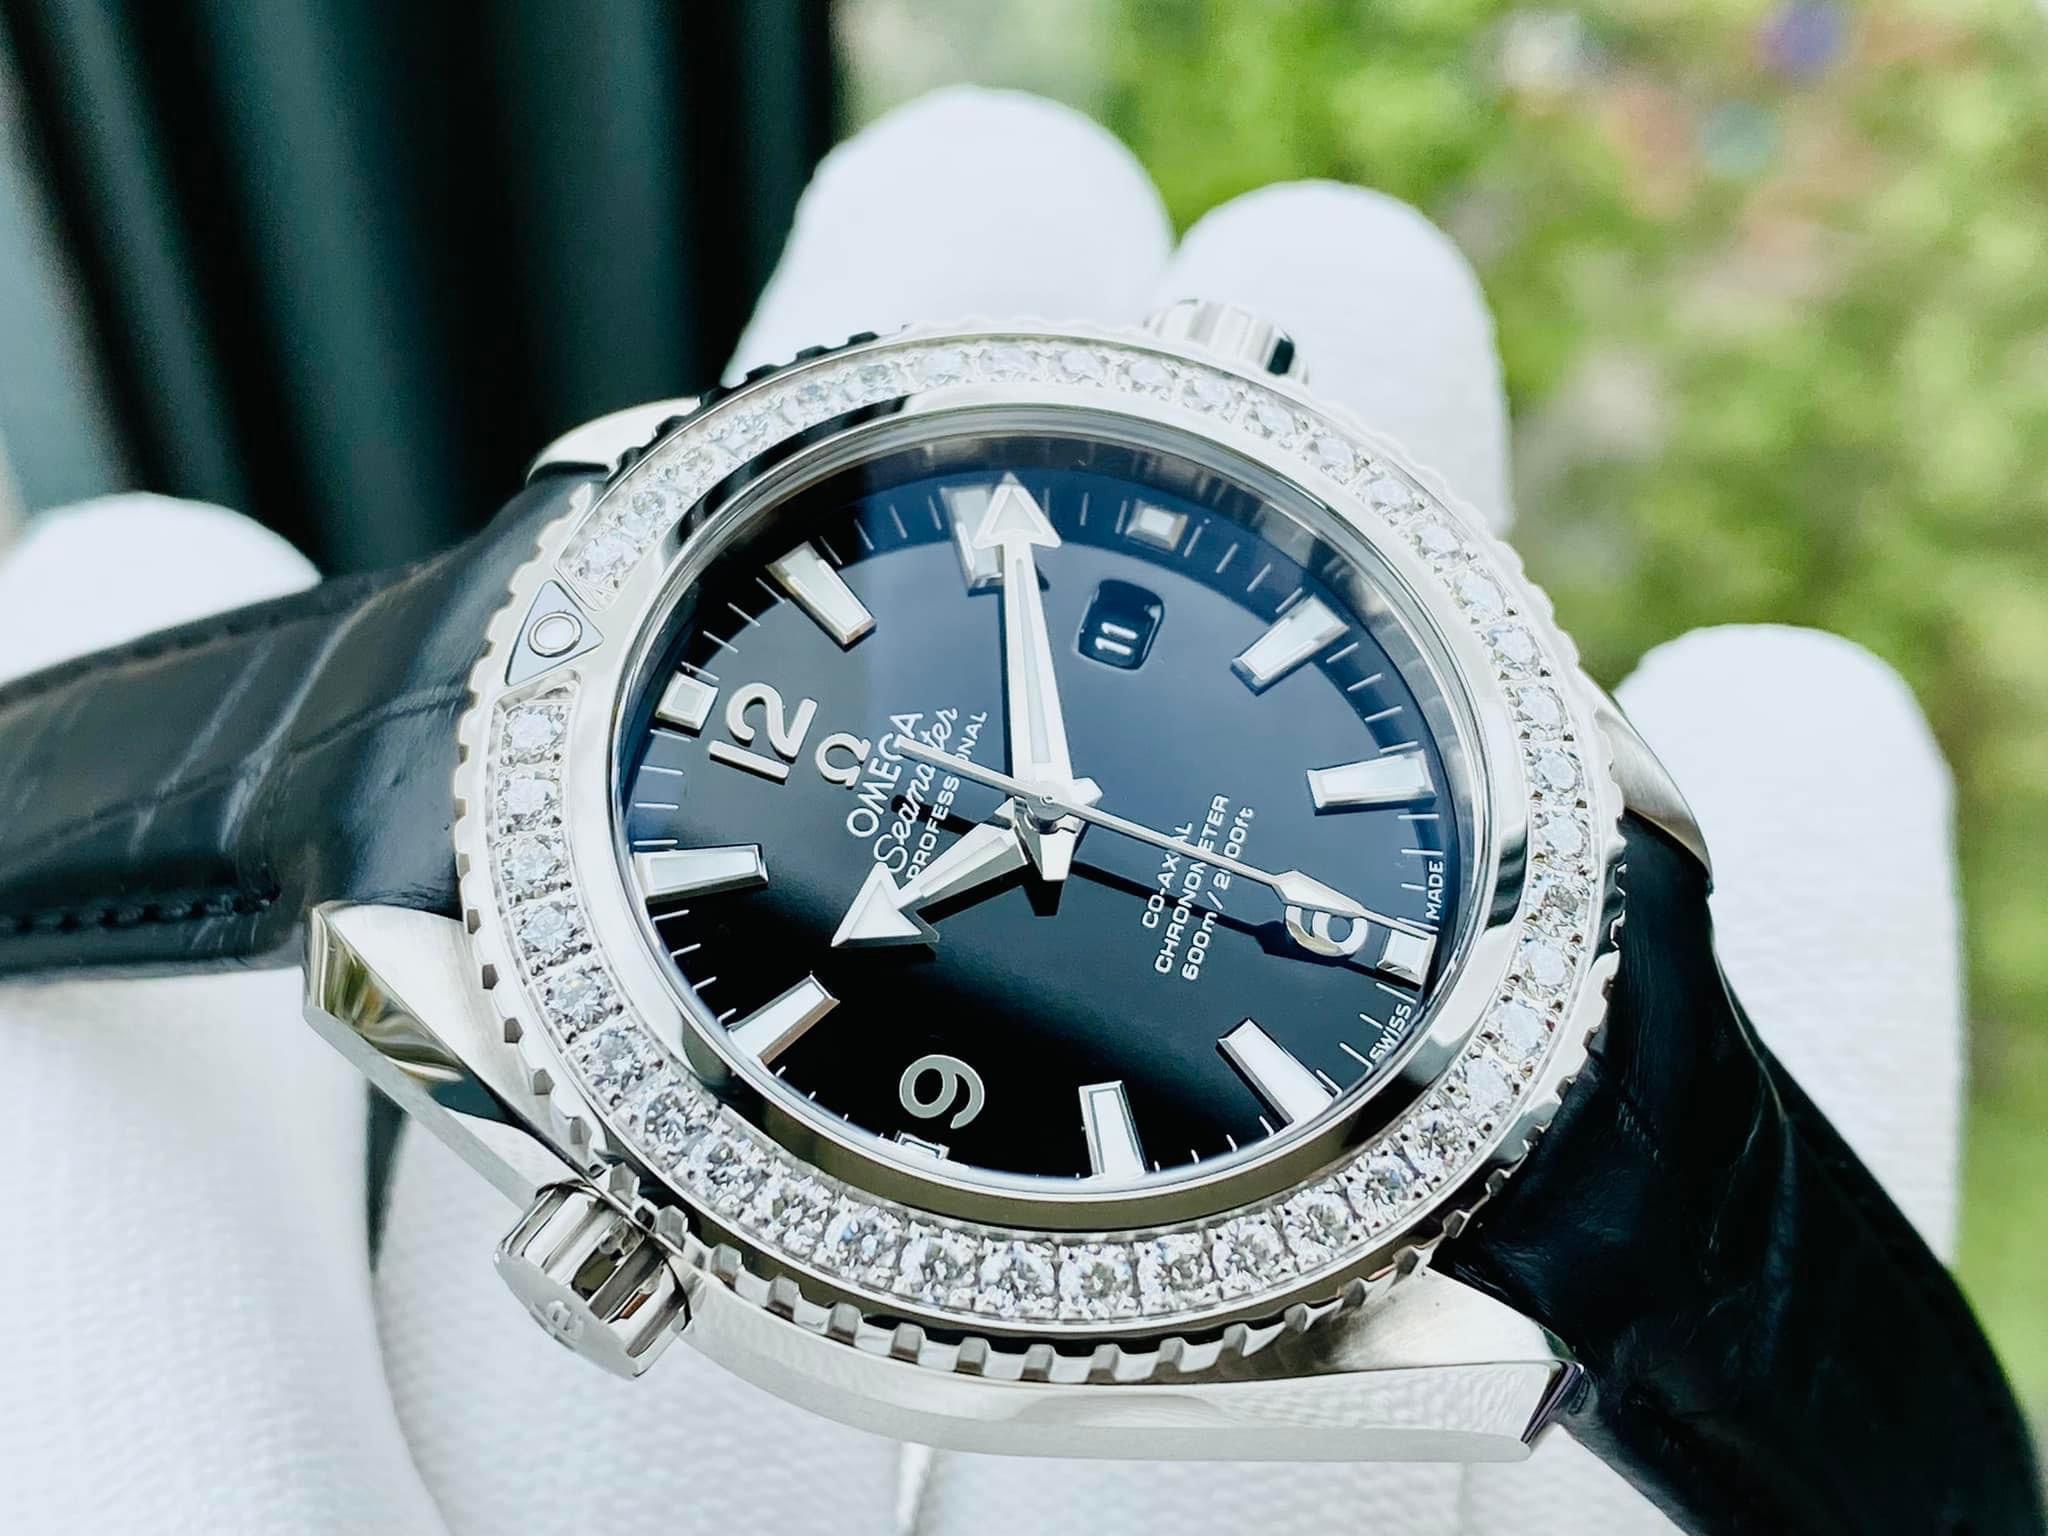 Đồng hồ OMEGA Seamaster Planet Ocean Automatic Diamond - Sự kết hợp hoàn hảo giữa đẳng cấp và sang trọng